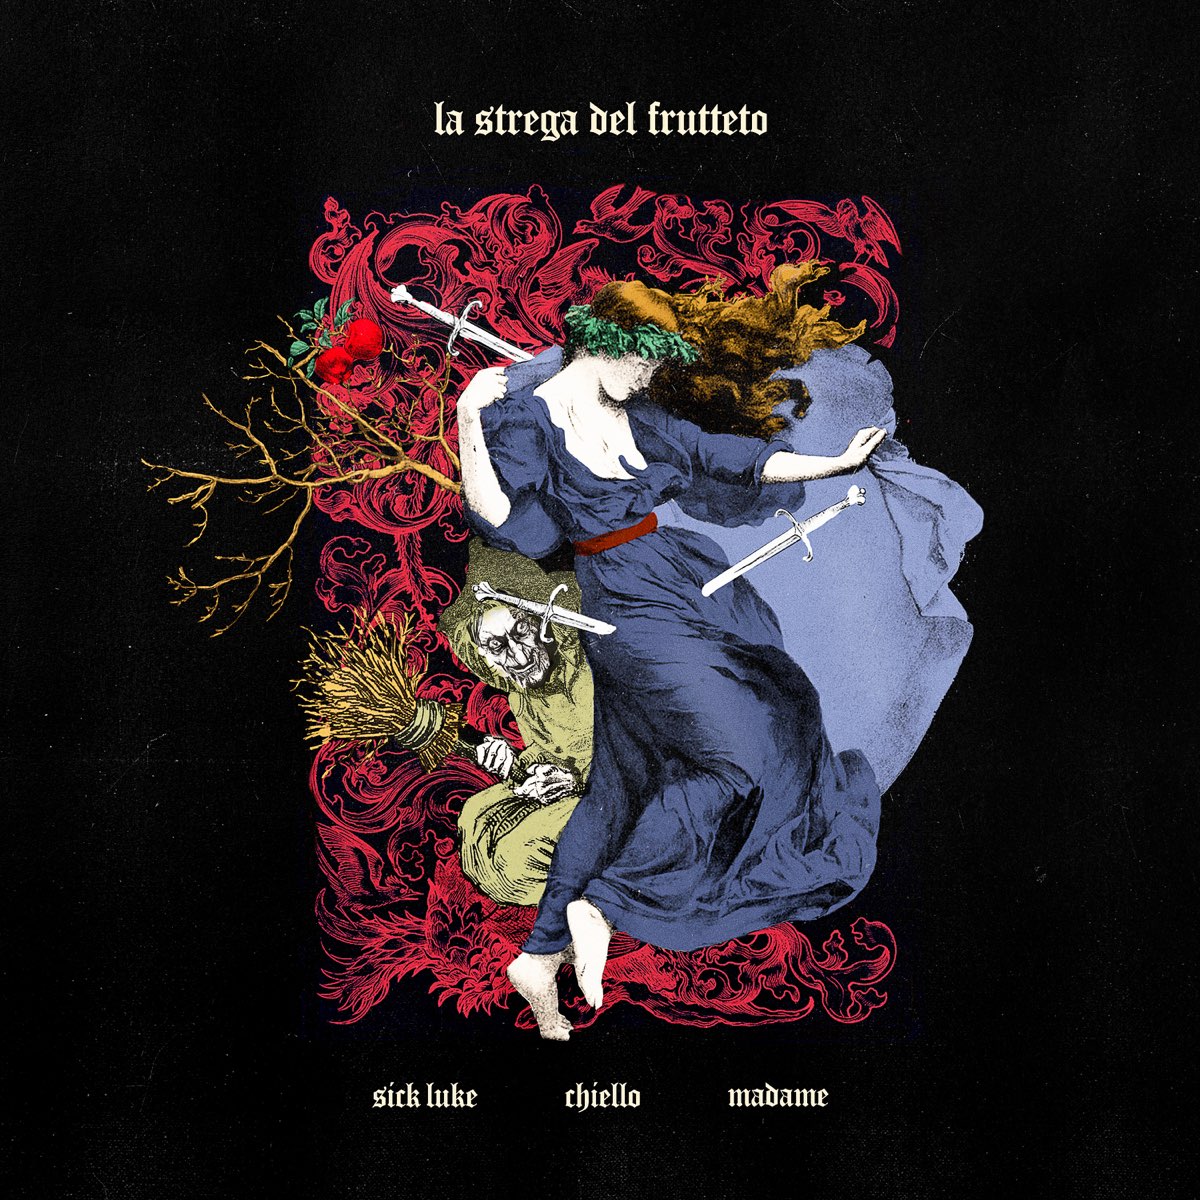 Sick Luke featuring Chiello & Madame — LA STREGA DEL FRUTTETO cover artwork